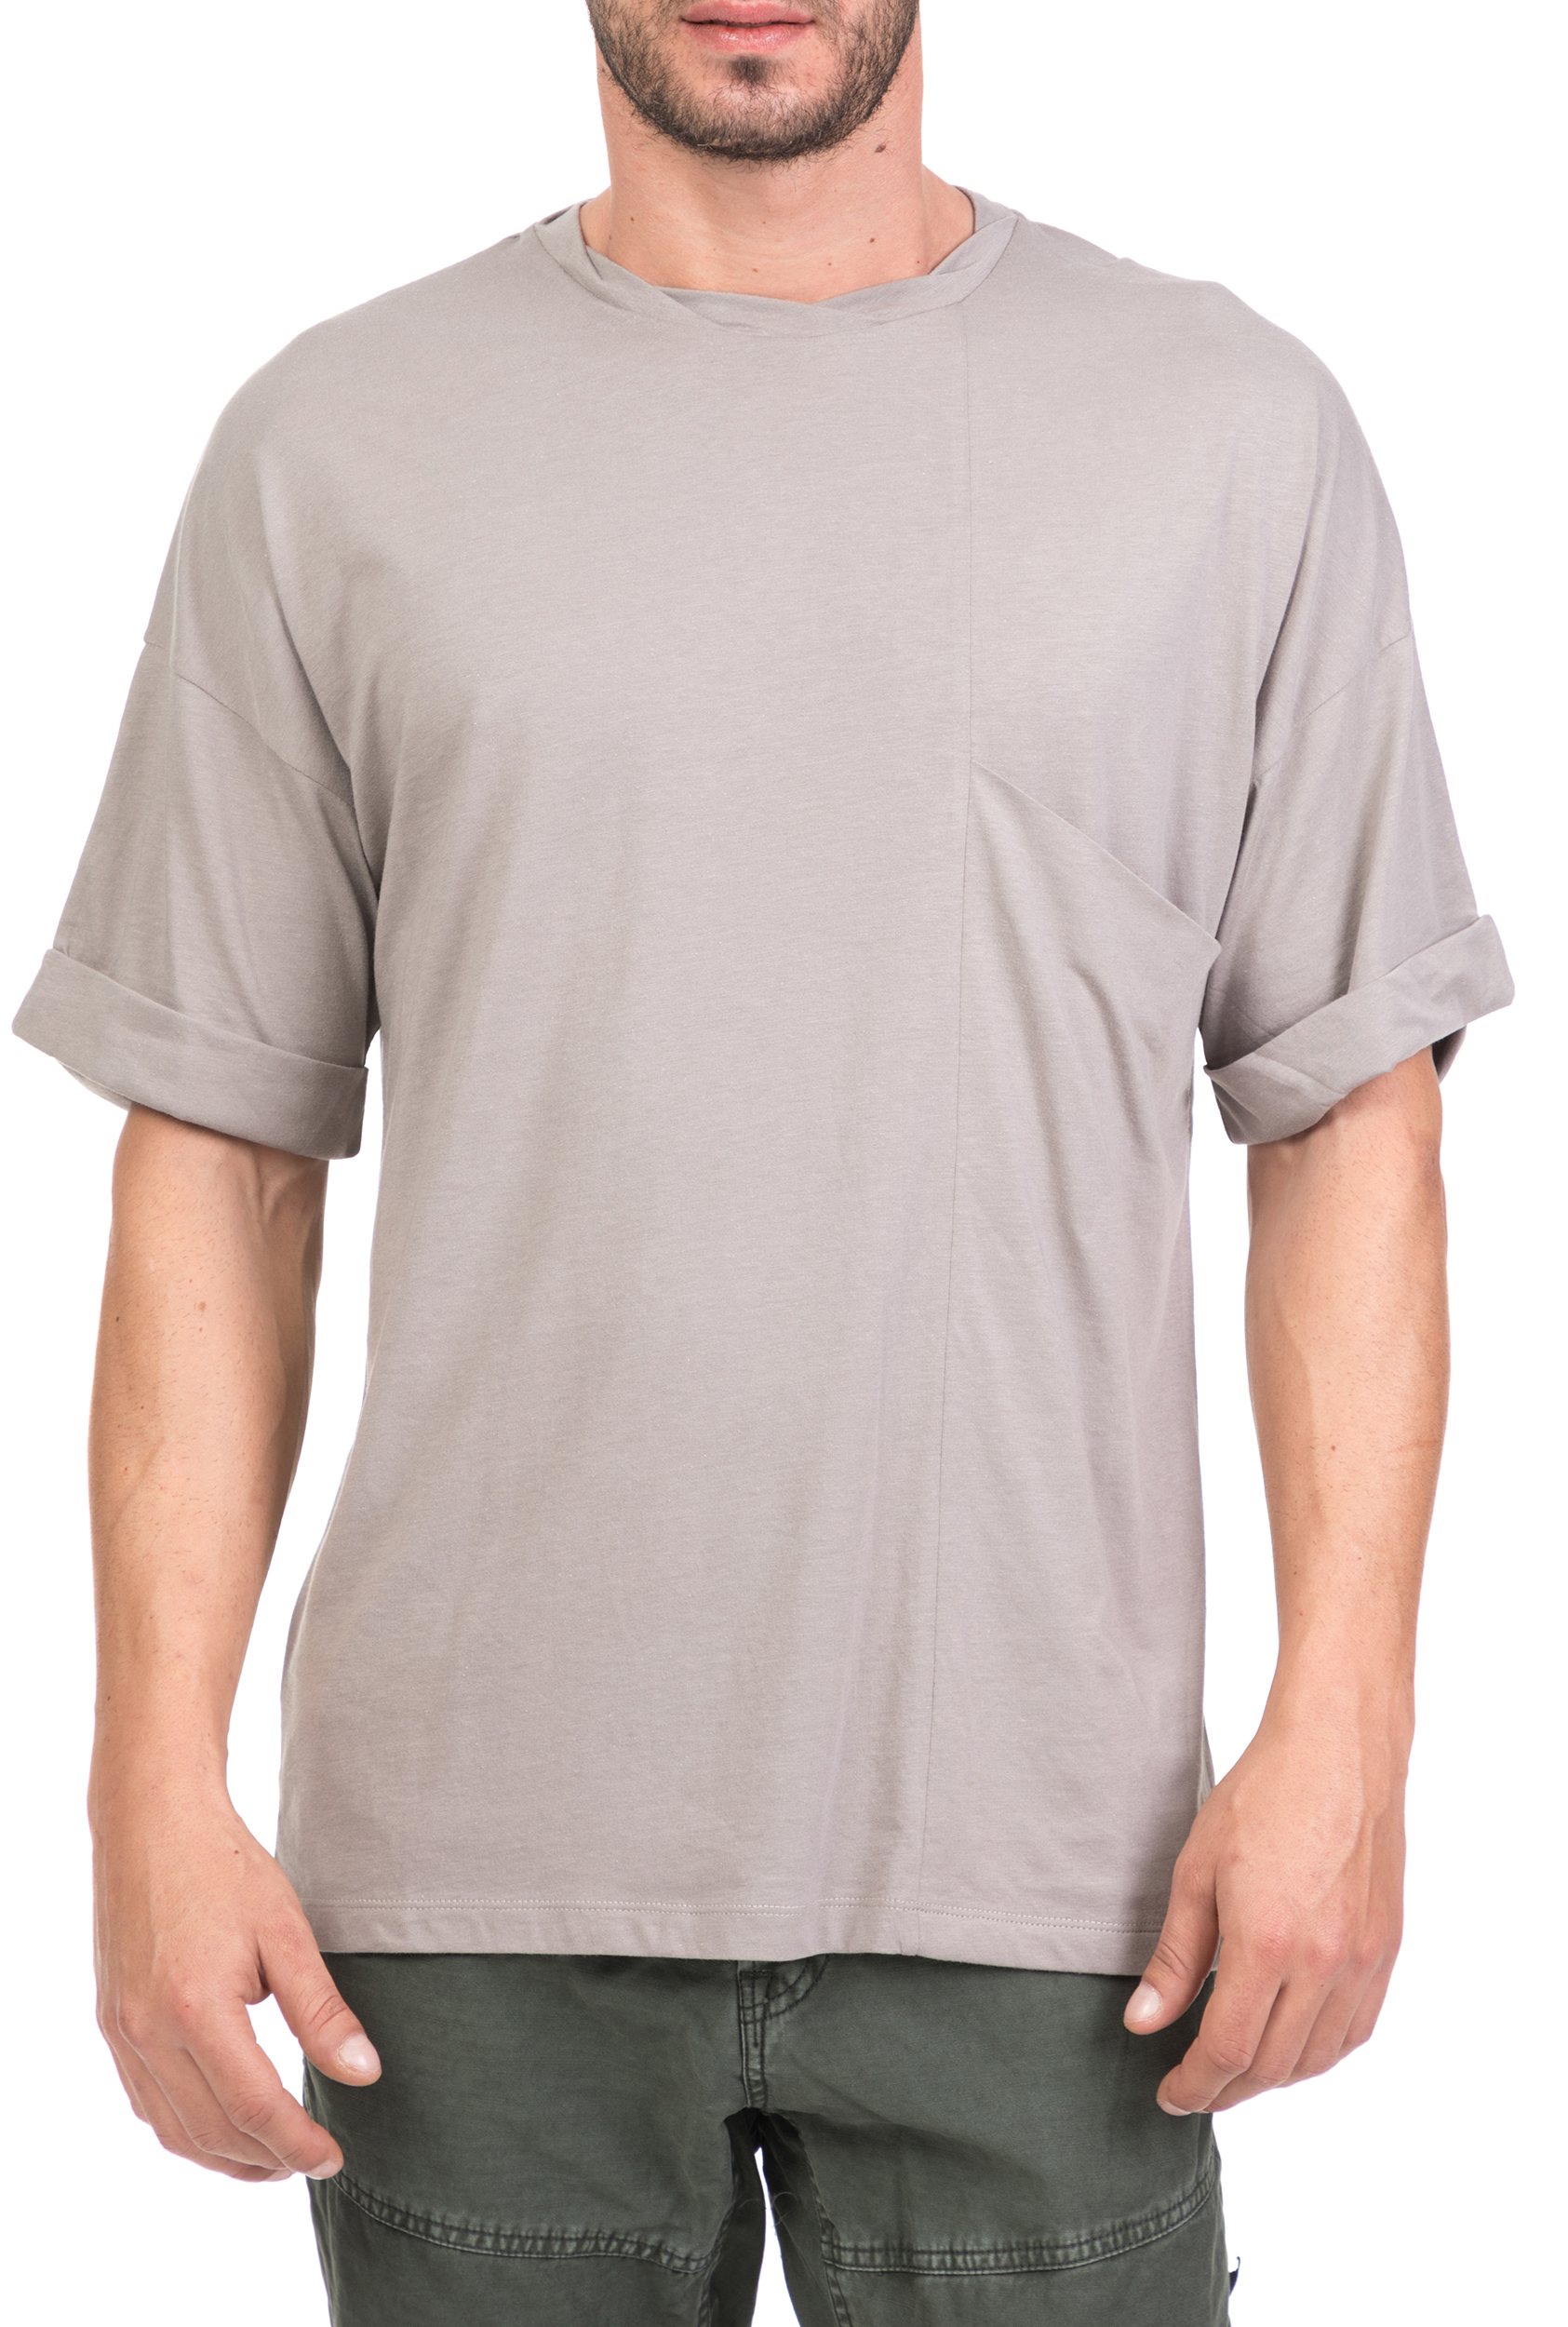 Ανδρικά/Ρούχα/Μπλούζες/Κοντομάνικες THE PROJECT GARMENTS - Ανδρική κοντομάνικη μπλούζα THE PROJECT GARMENTS γκρι